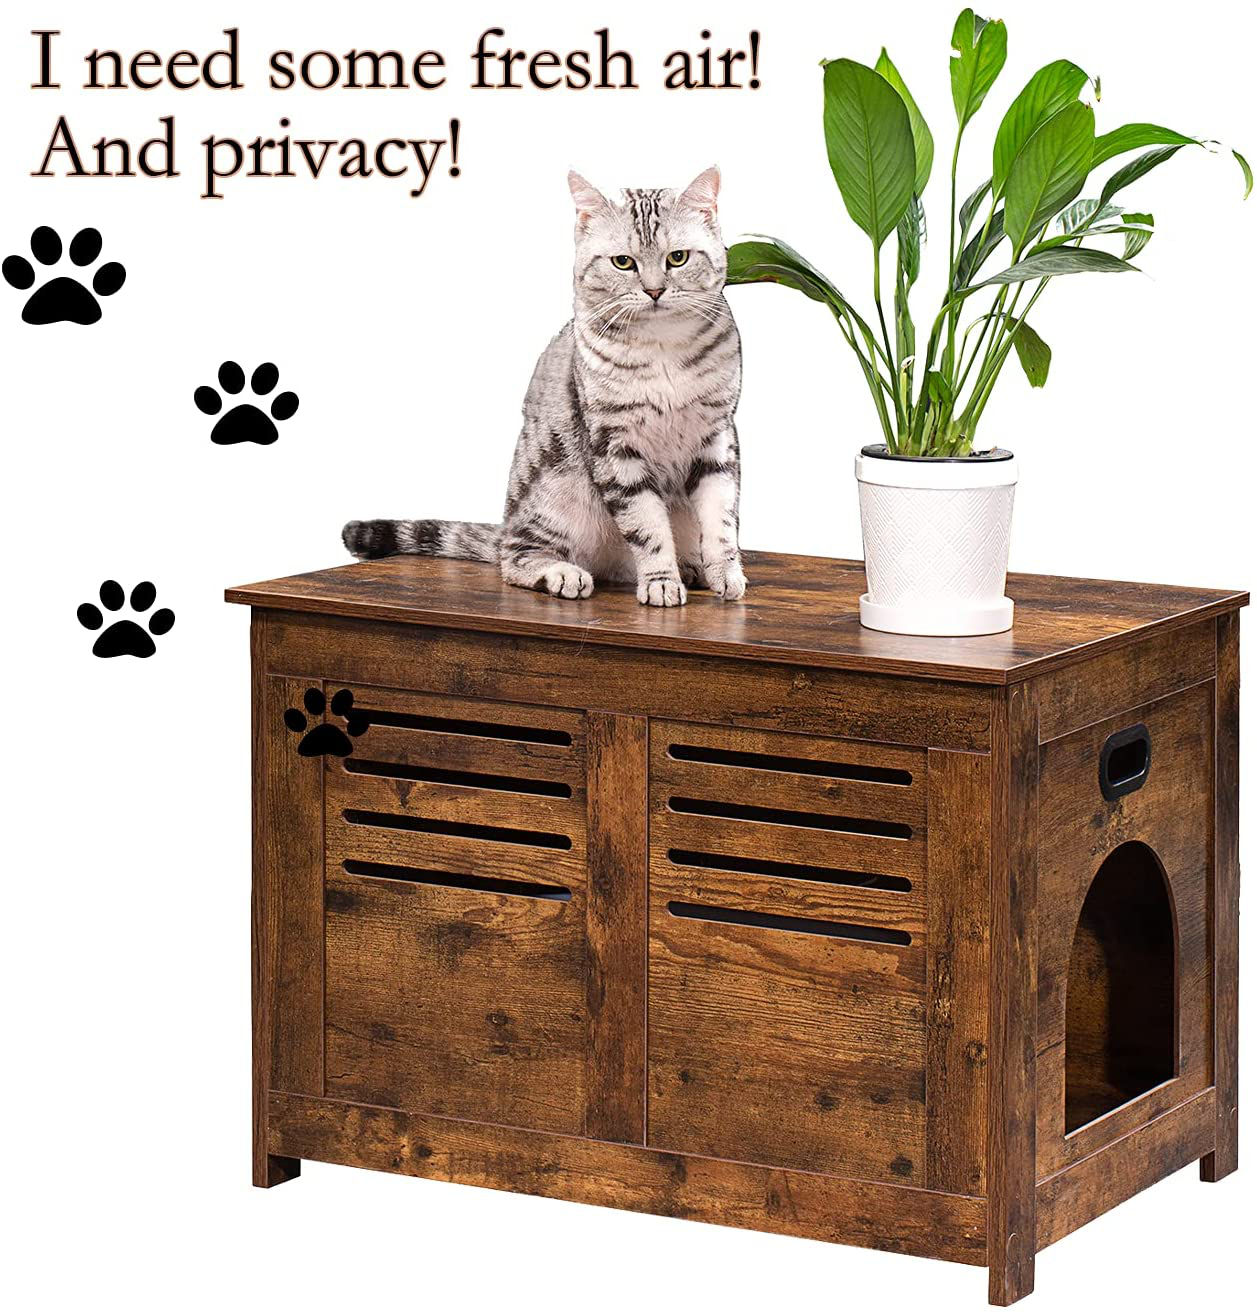 DINZI LVJ Litter Box Enclosure Furniture, Hidden Litter Box with Good  Ventilation, Litter Box Cabinet, Wooden Cat Washroom Fit Most of Litter  Box